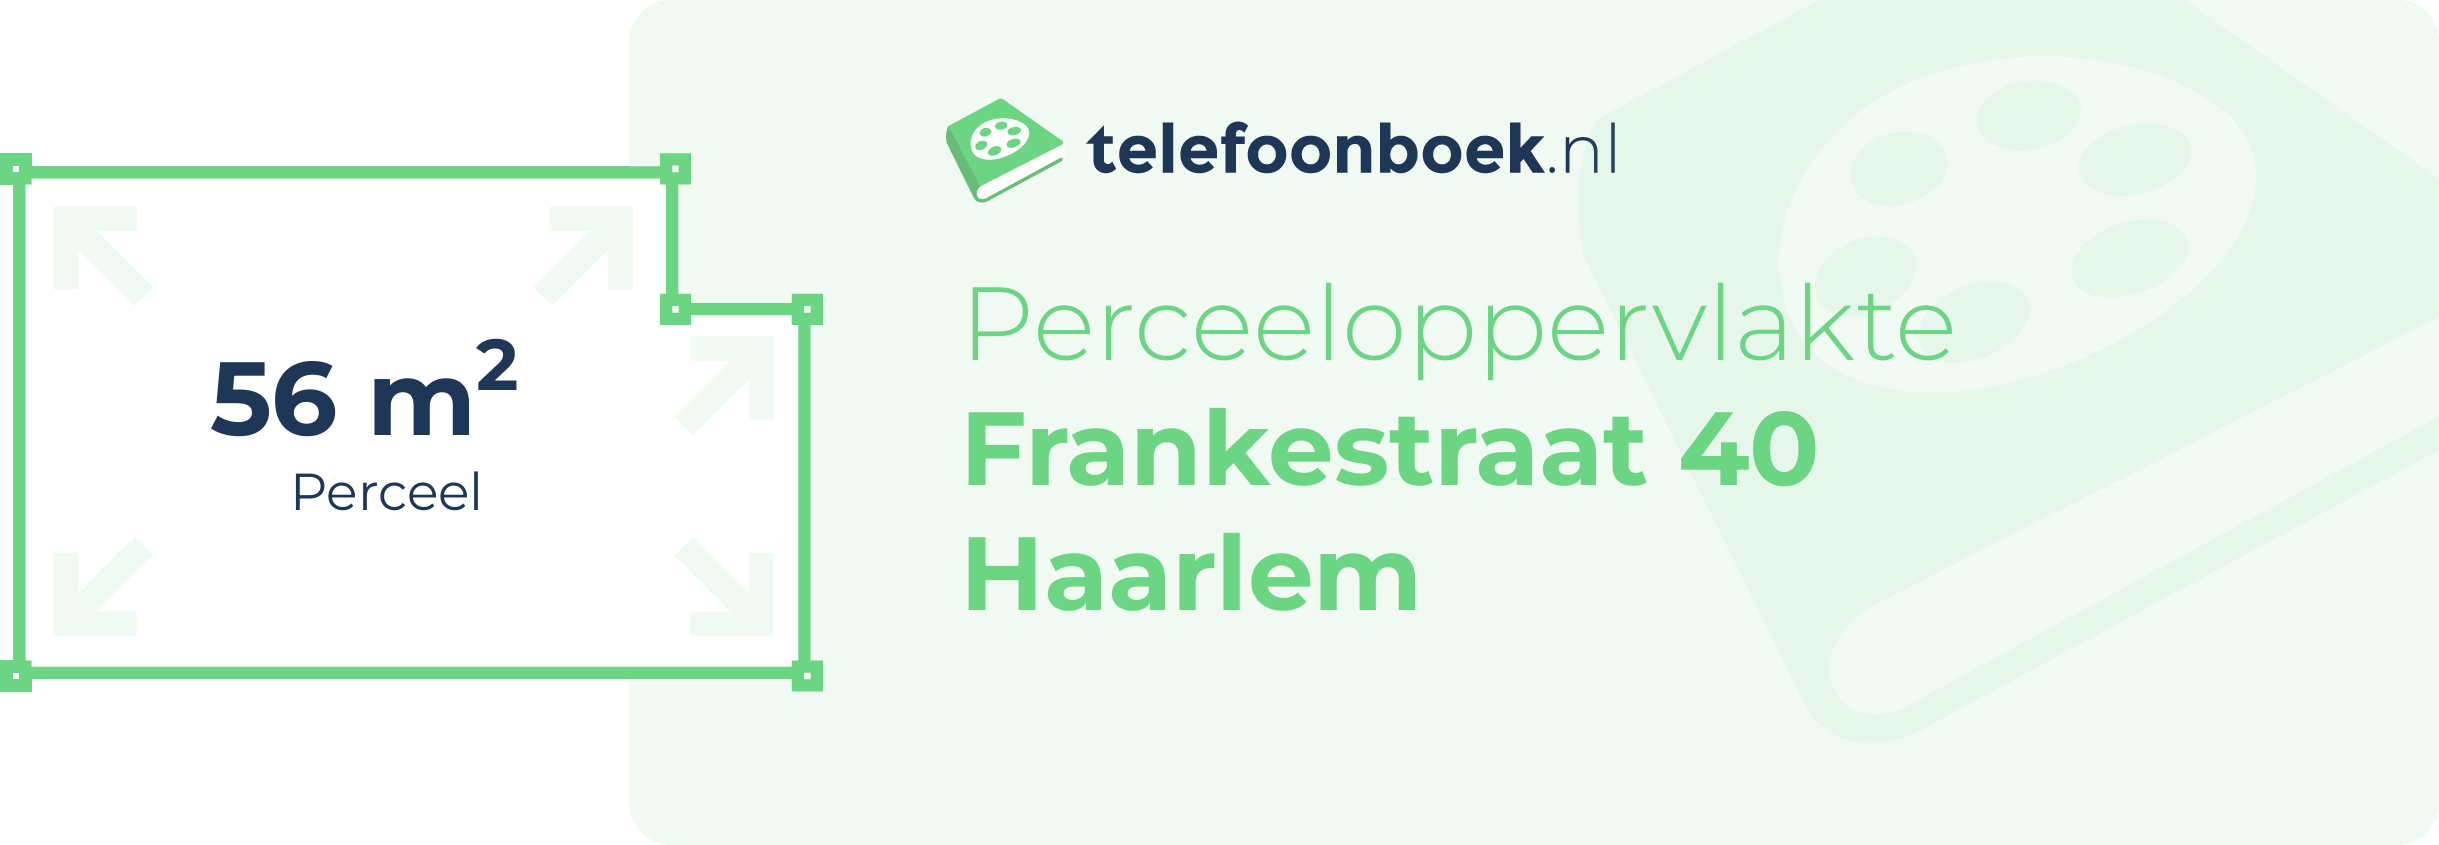 Perceeloppervlakte Frankestraat 40 Haarlem